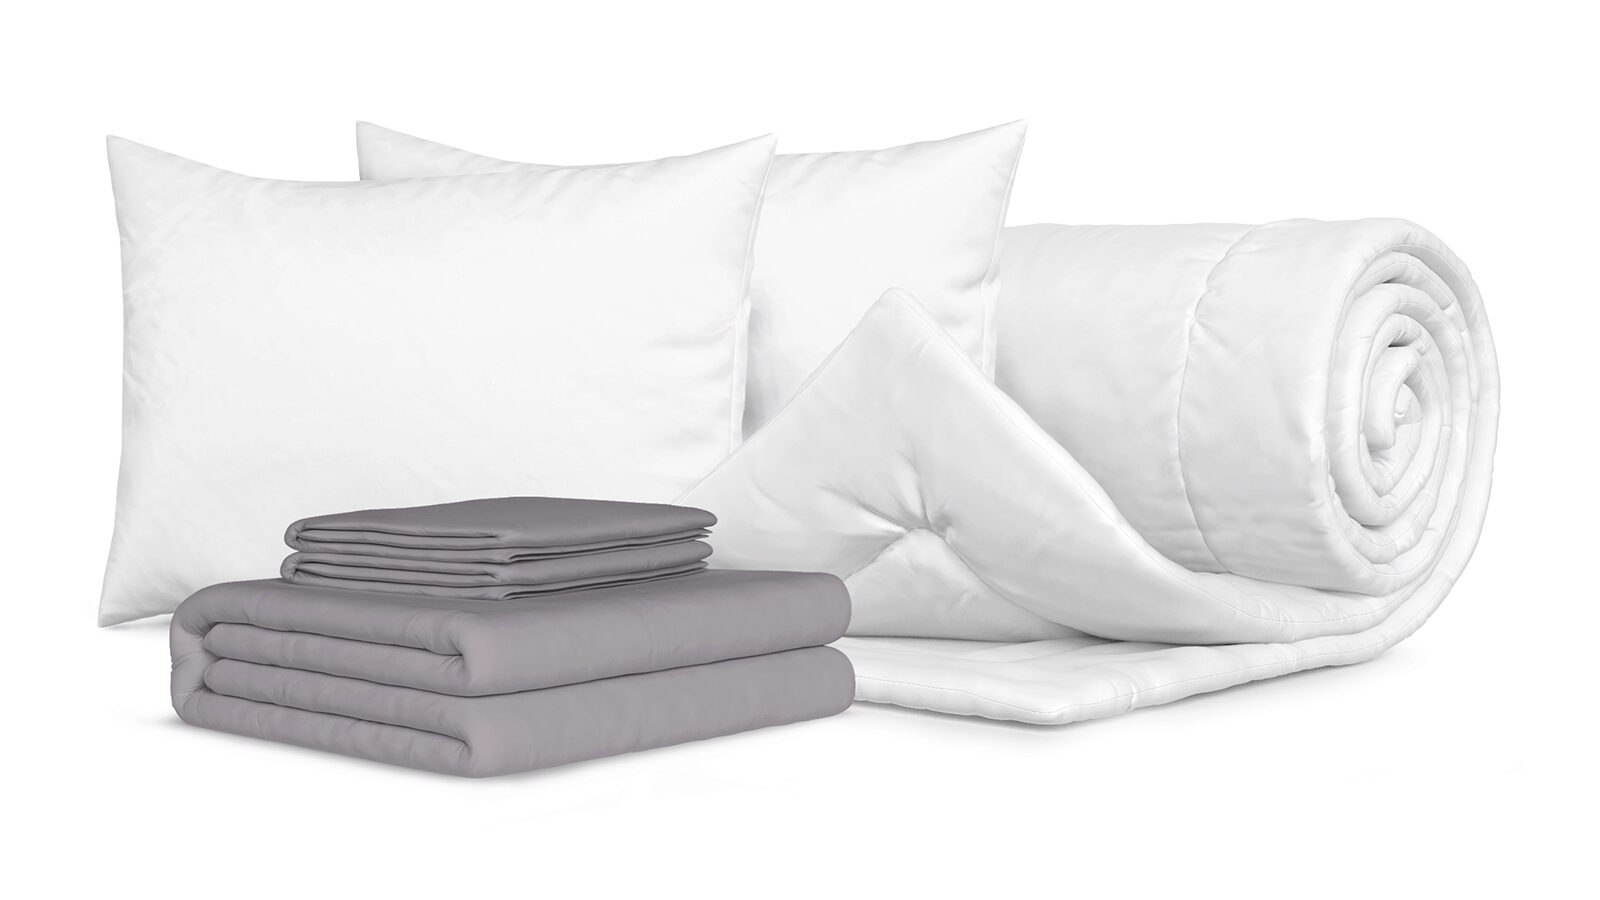 Комплект Одеяло Beat + 2 Подушка Sky + Комплект постельного белья Comfort Cotton, цвет: Светло-серый комплект карточек цифры и знаки в картинках